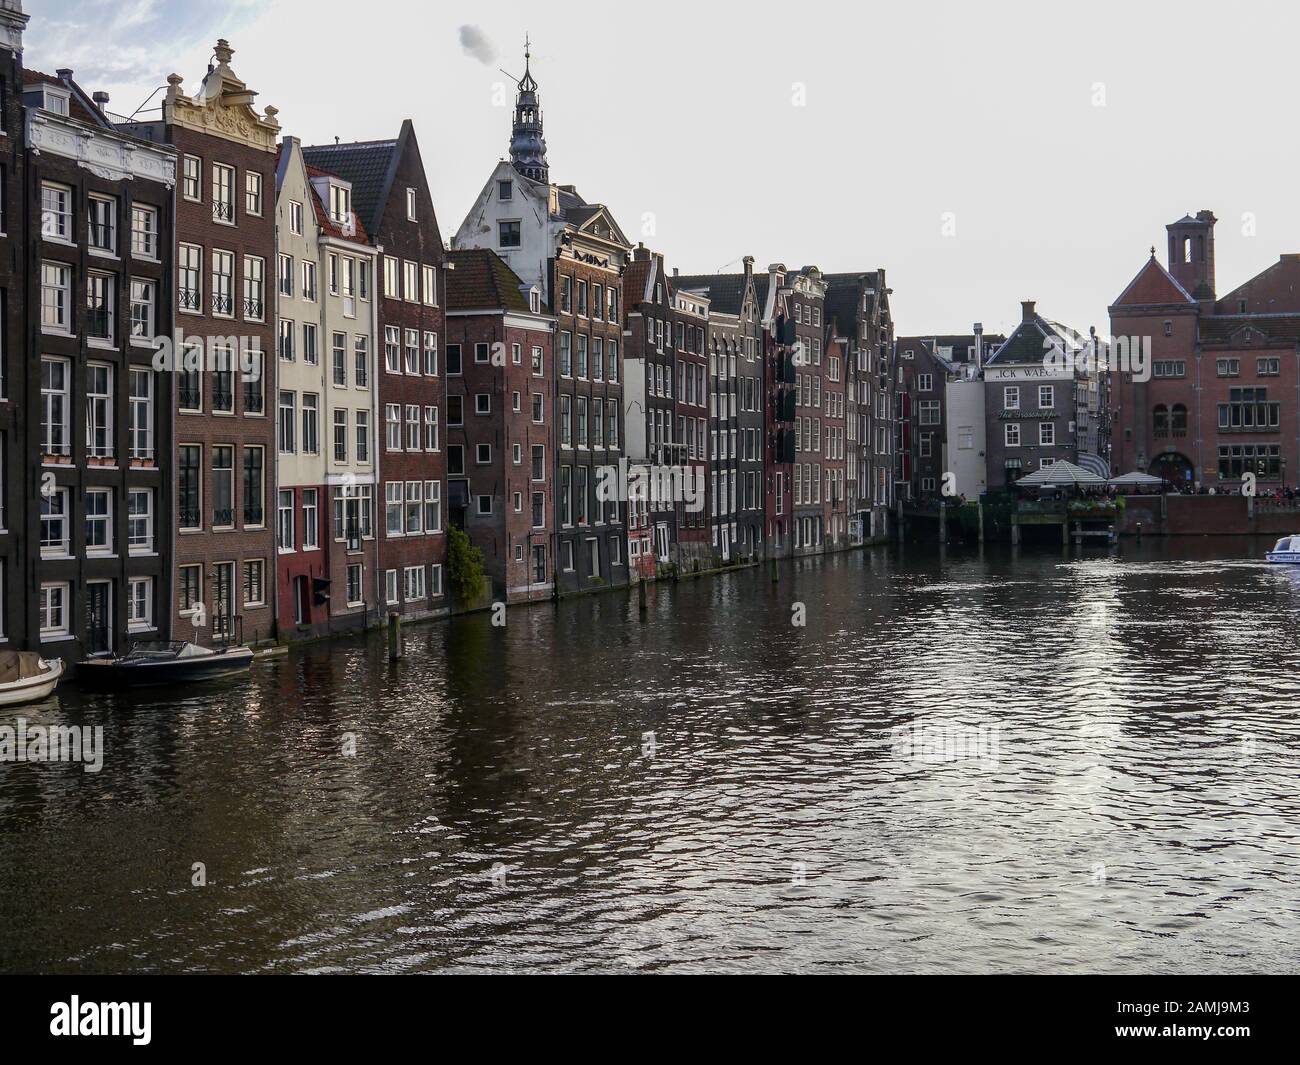 Bateau de croisière touristique sur un canal à Amsterdam, Pays-Bas Banque D'Images